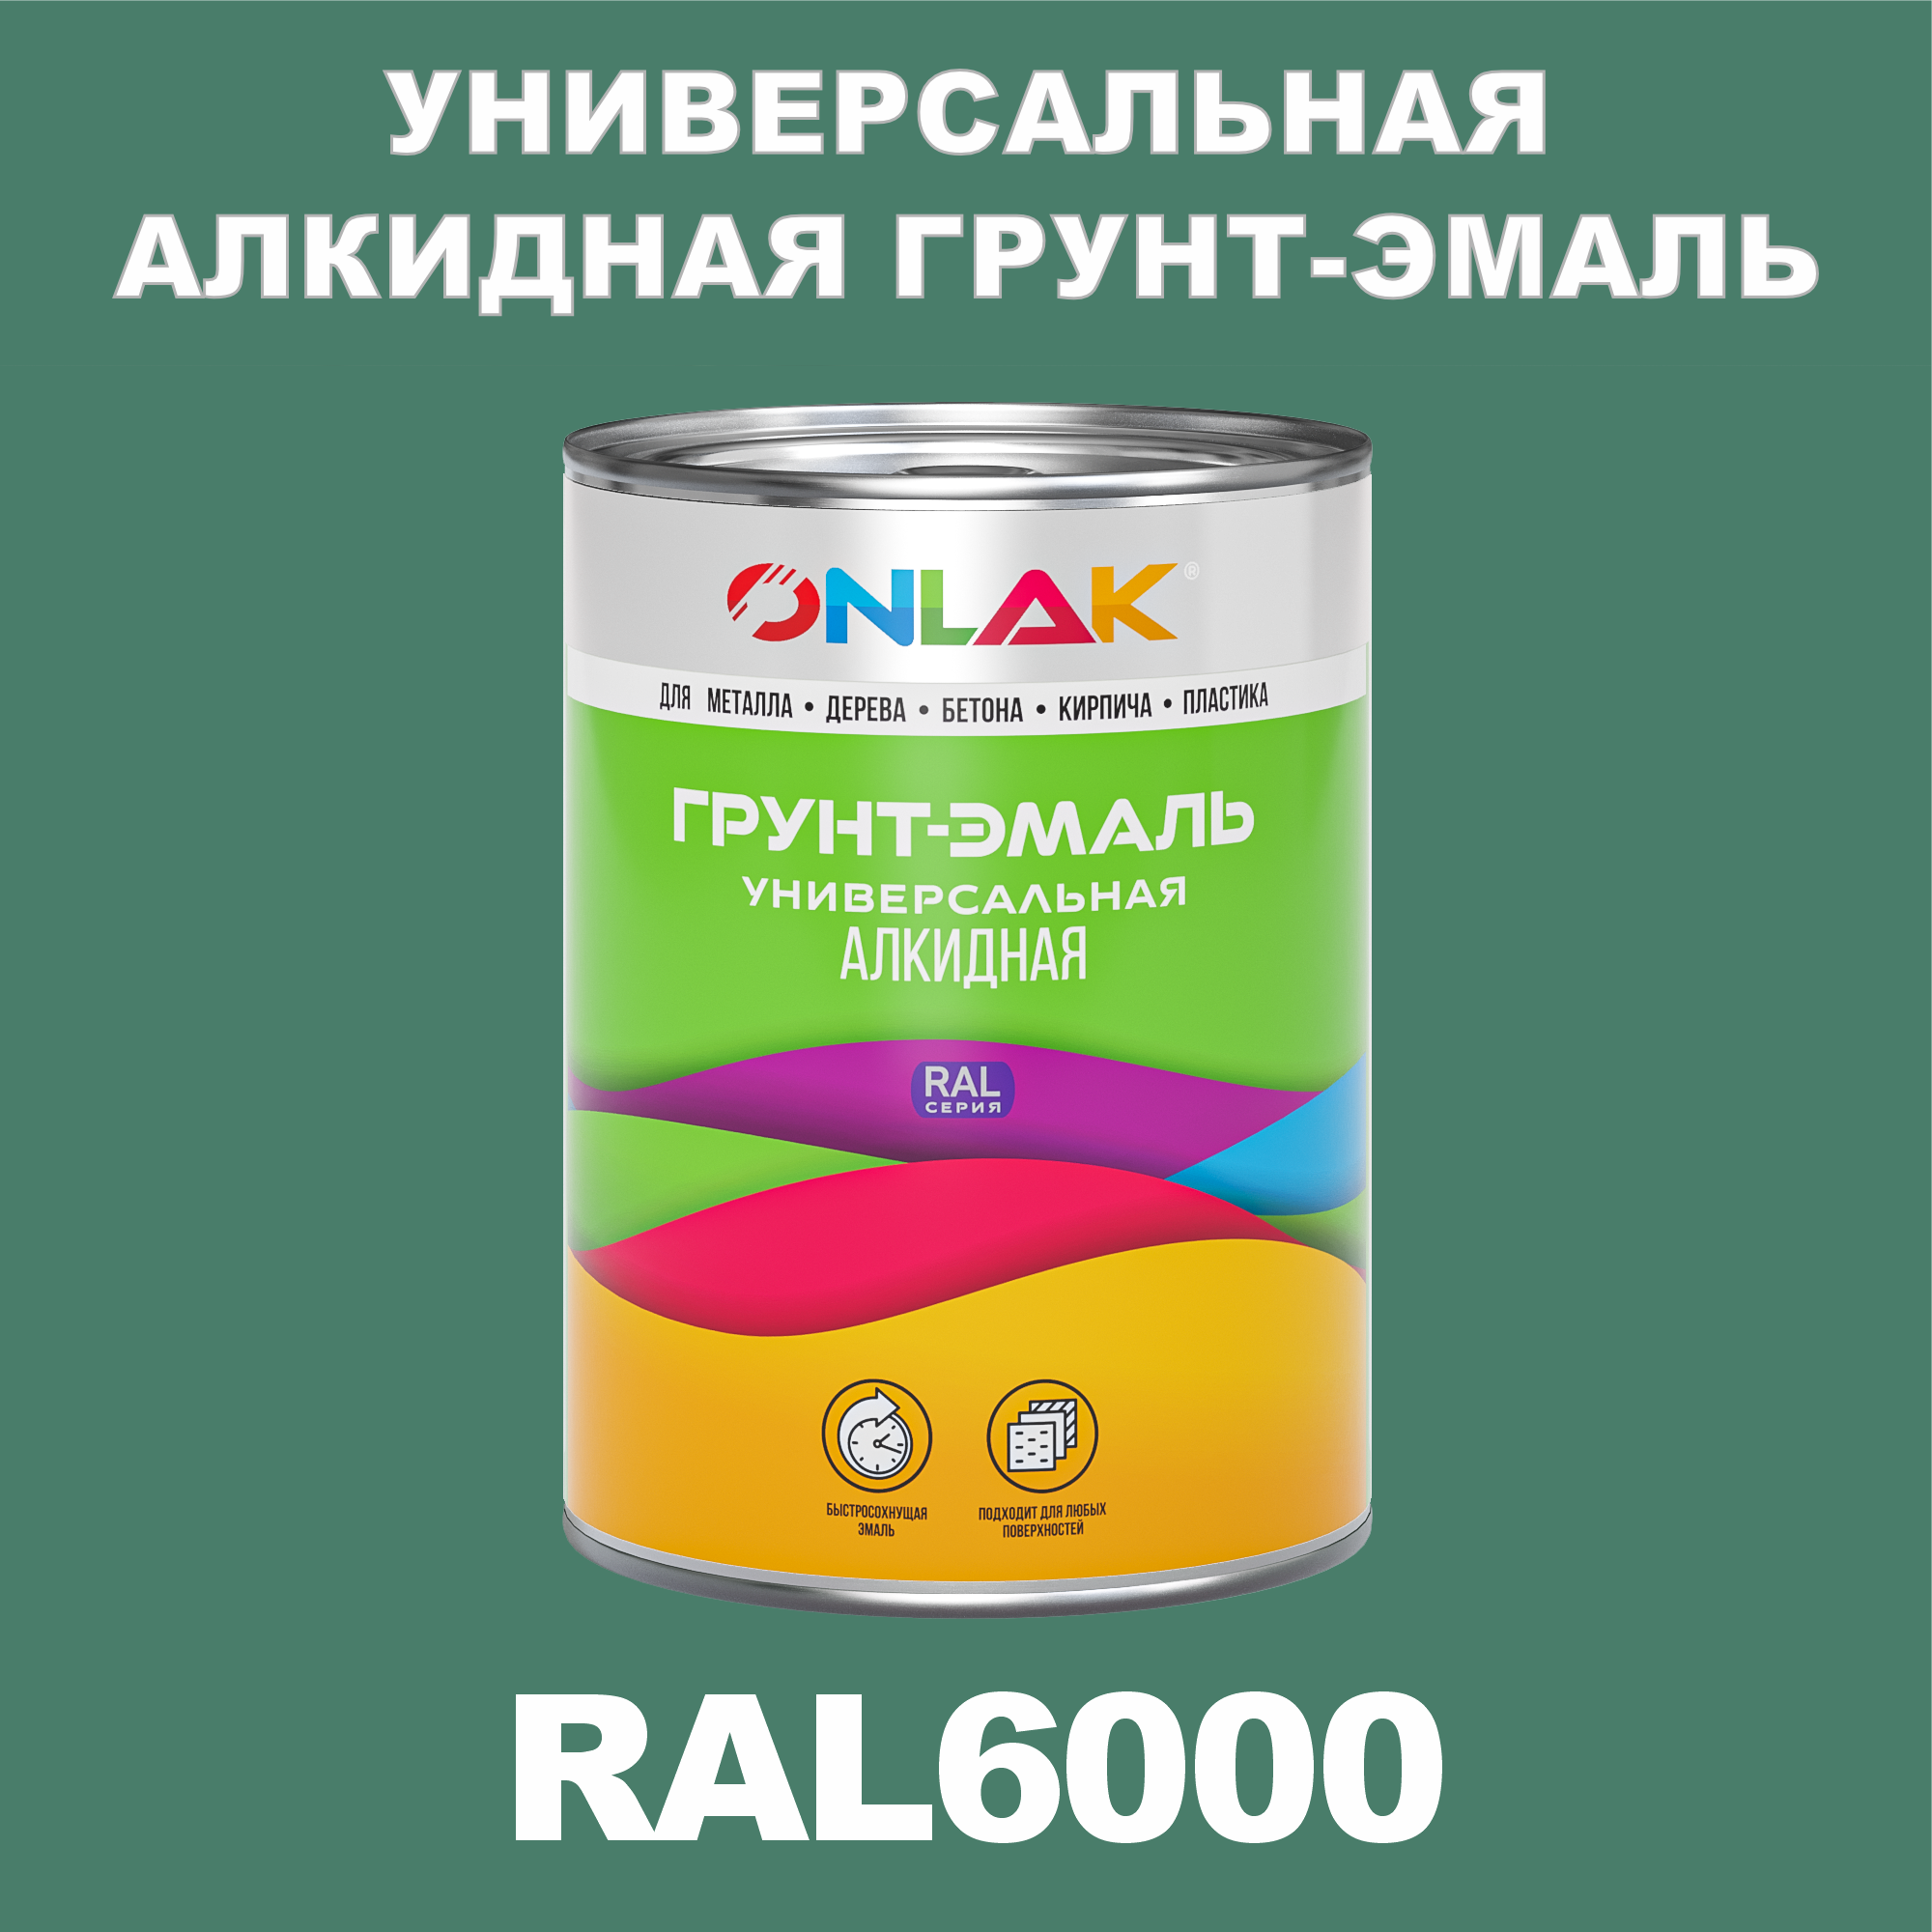 Грунт-эмаль ONLAK 1К RAL6000 антикоррозионная алкидная по металлу по ржавчине 1 кг